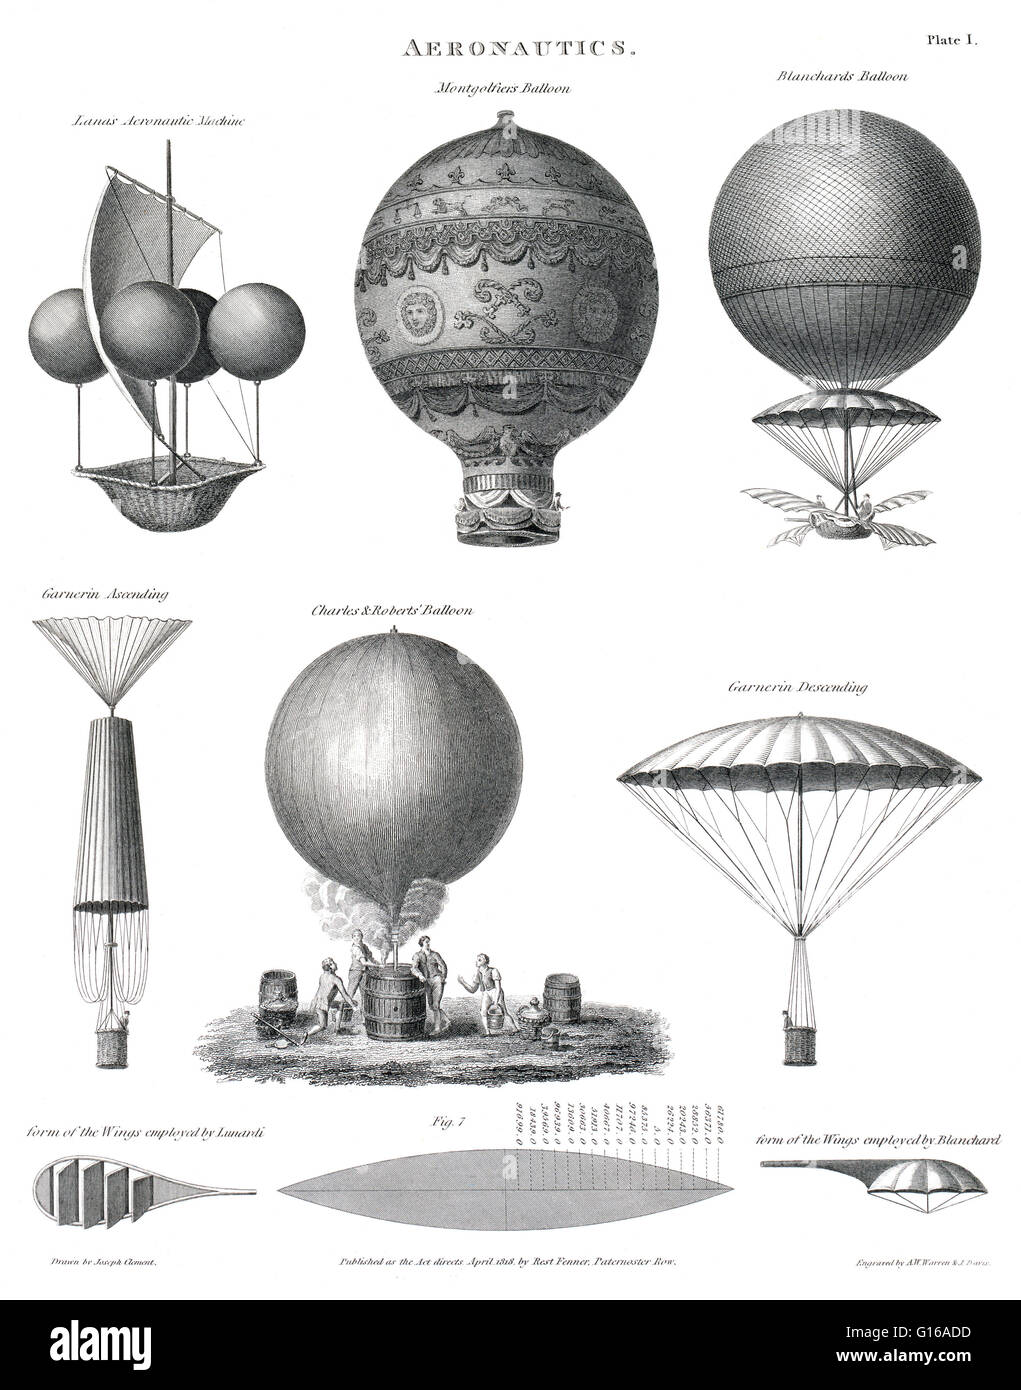 Technischer Illustration zeigt frühe Ballon Designs: Lanas aeronautic Maschine, Montgolfiers Ballon, Blanchards Ballon, Garnerins auf- und niedersteigen in seinen Fallschirm, Charles & Roberts Ballon aufgeblasen wird, die Form der Flügel angestellt Stockfoto